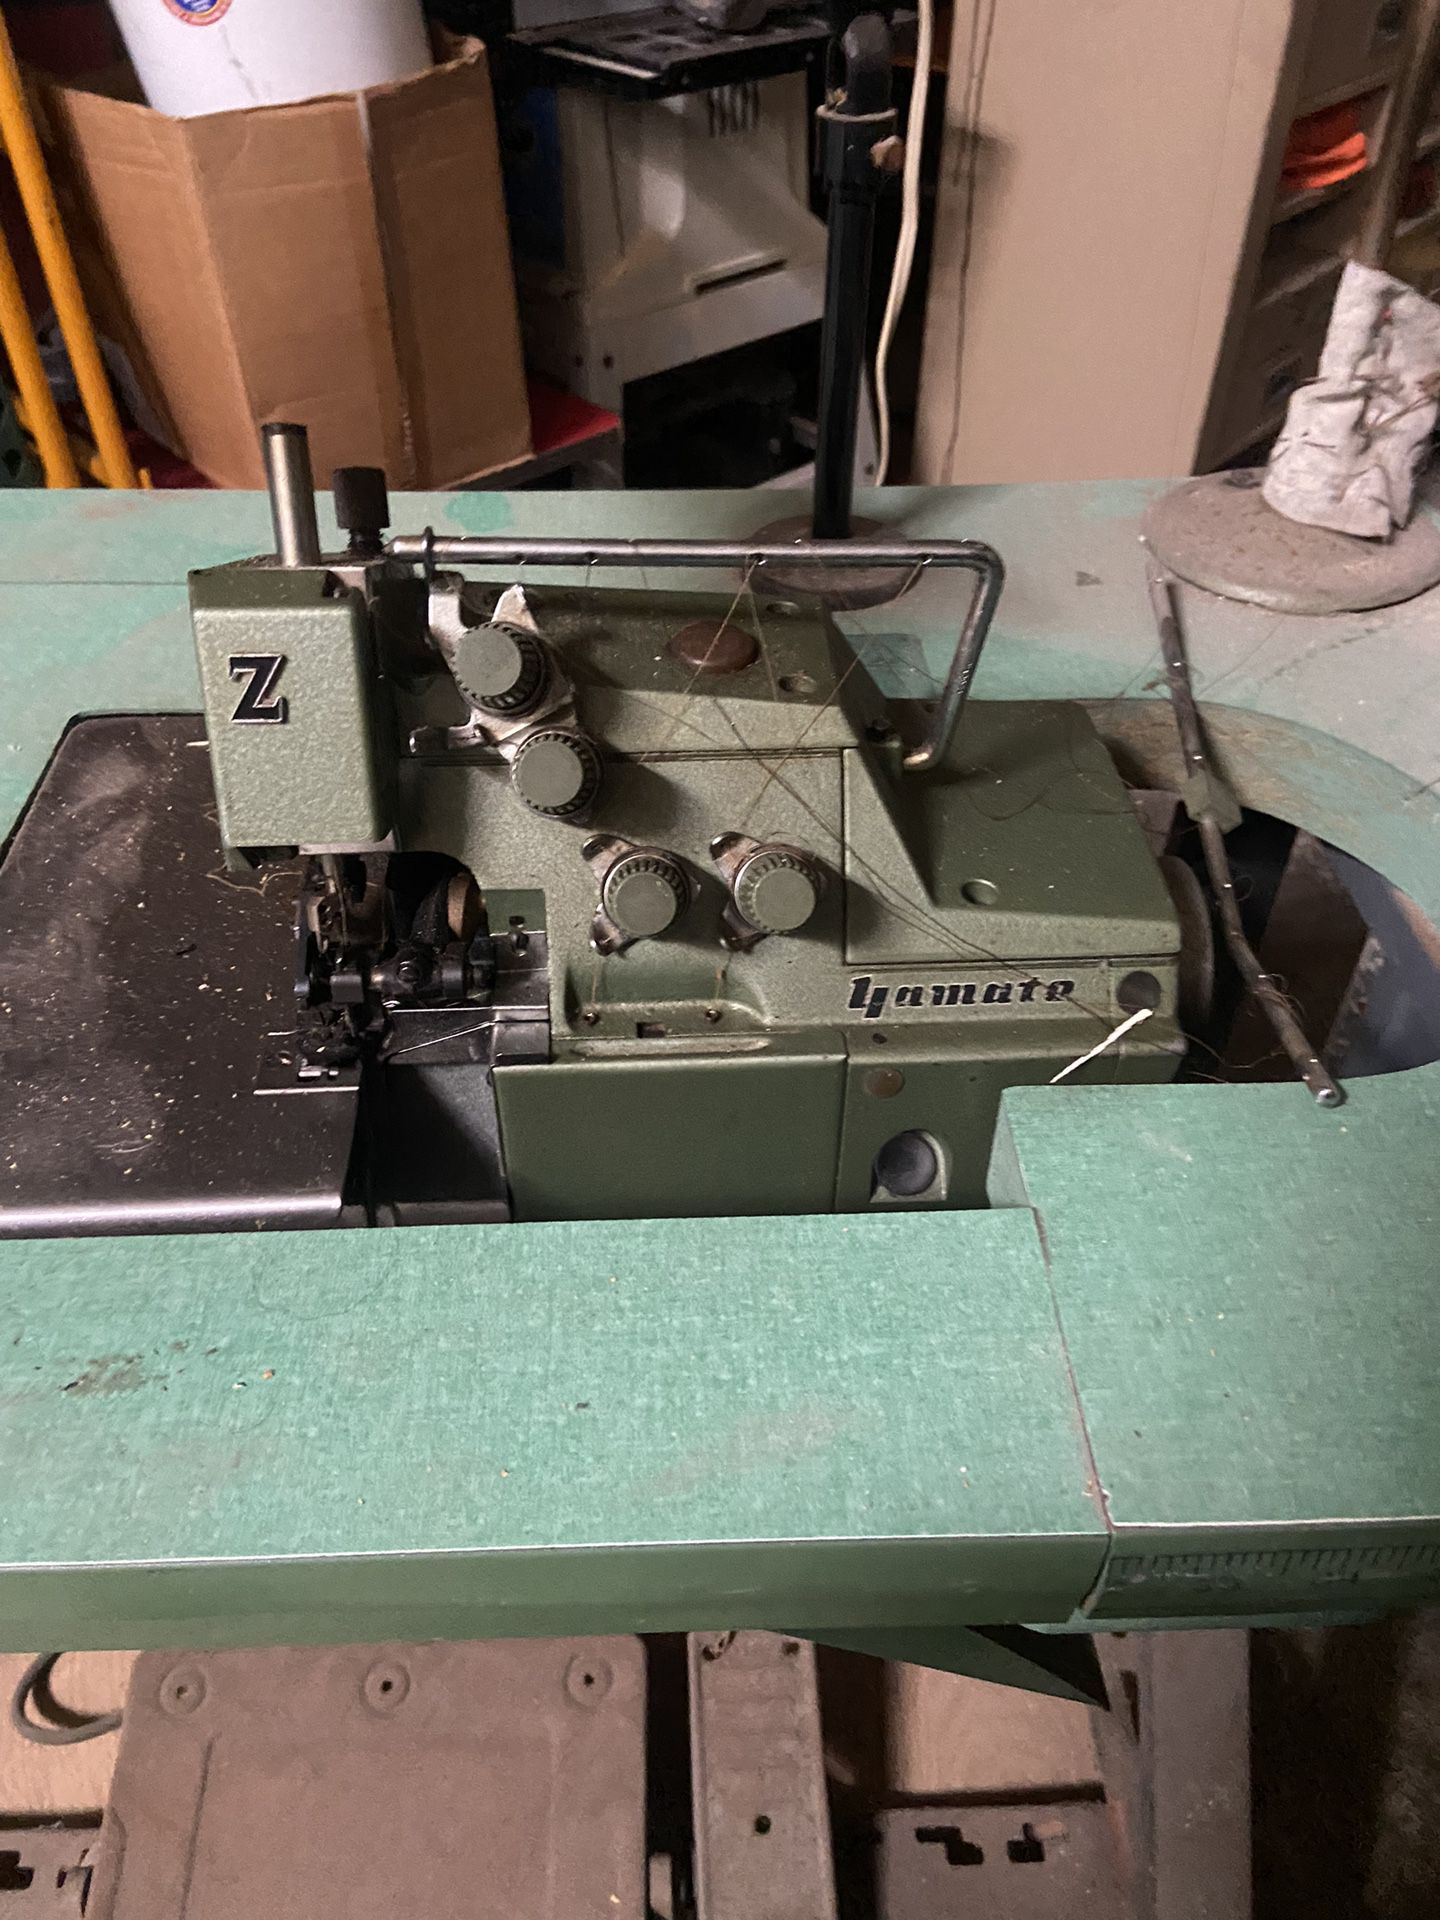 Serger Sewing Machine 4 Thread Yamato